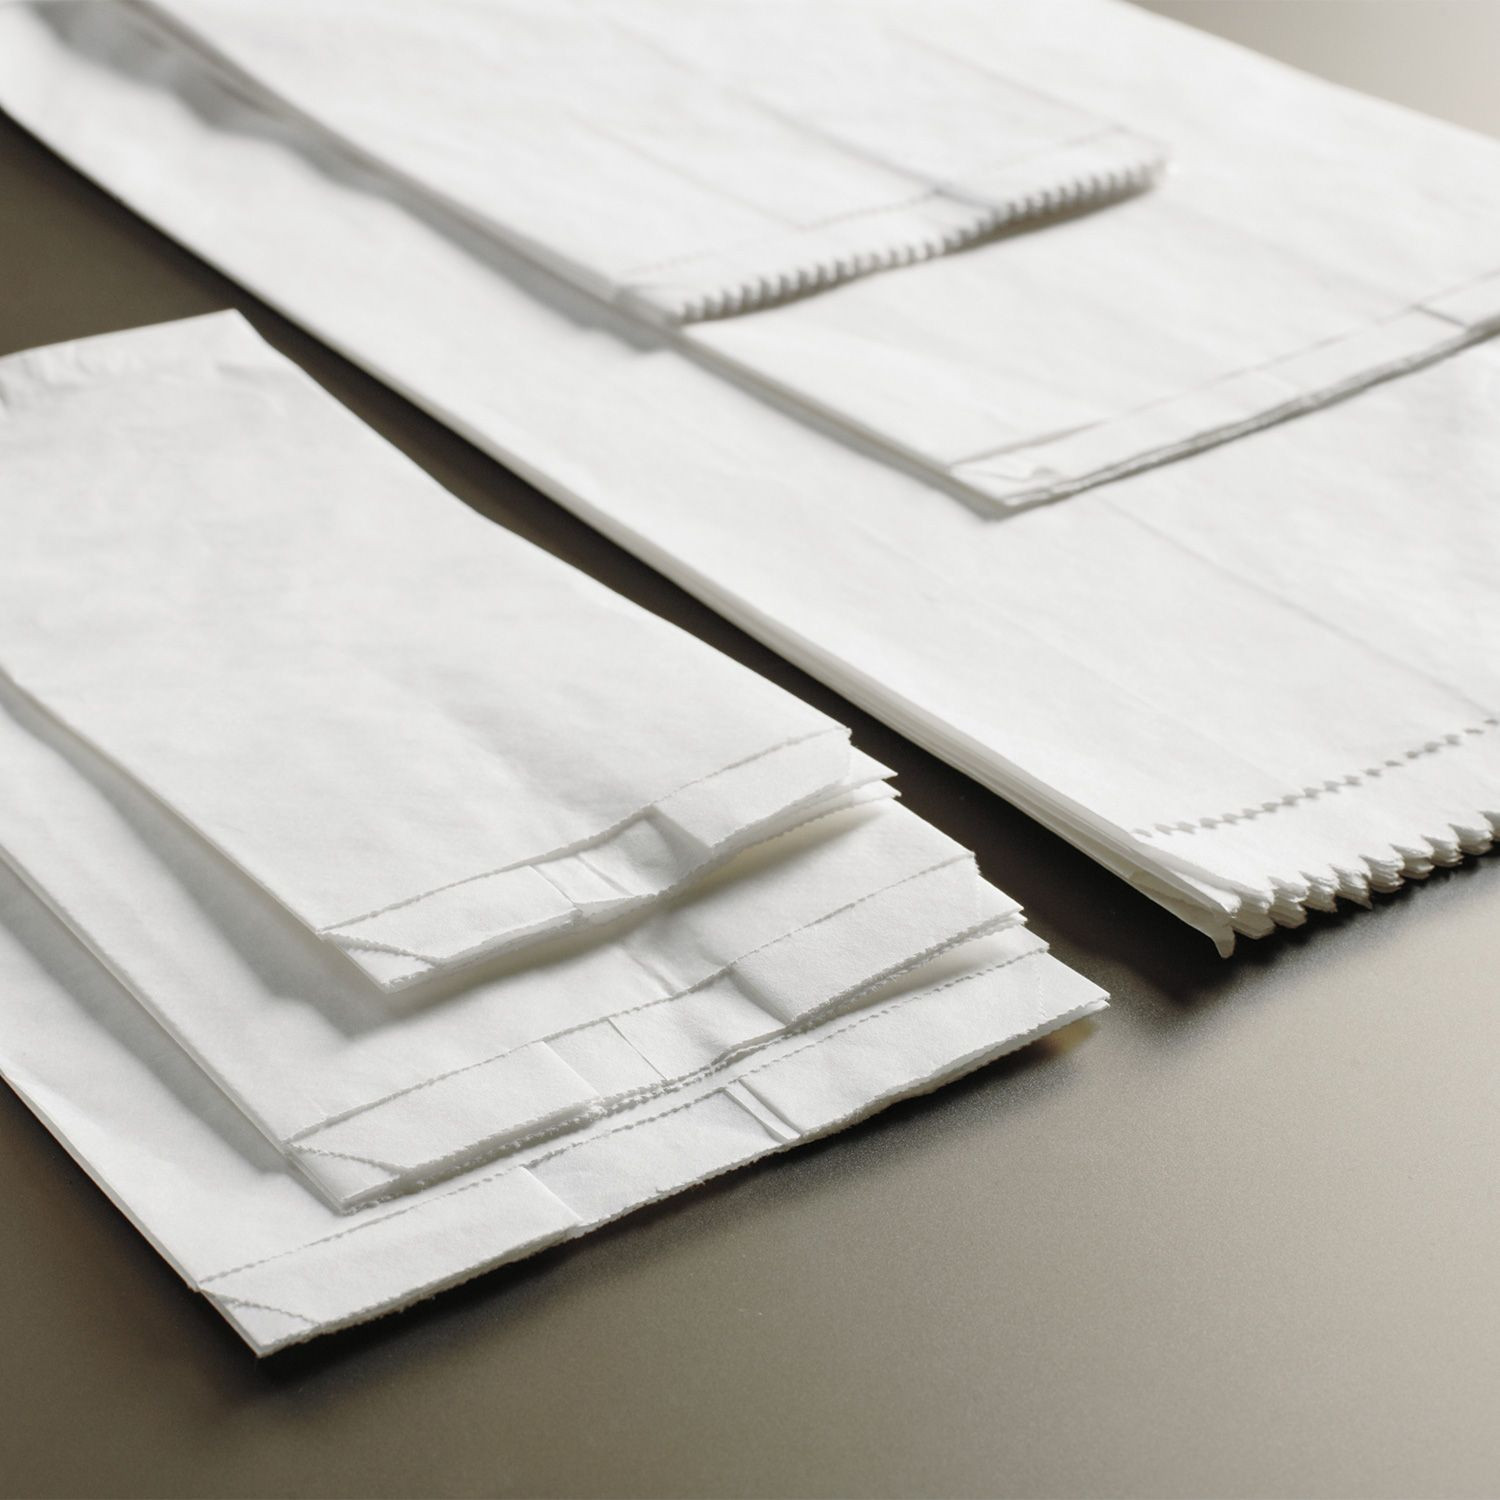 Sacchetti in carta kraft bianchi 15×35 per alimenti secchi o oggetti medio/ piccoli – confezione da 1000 pz – MEP Shop